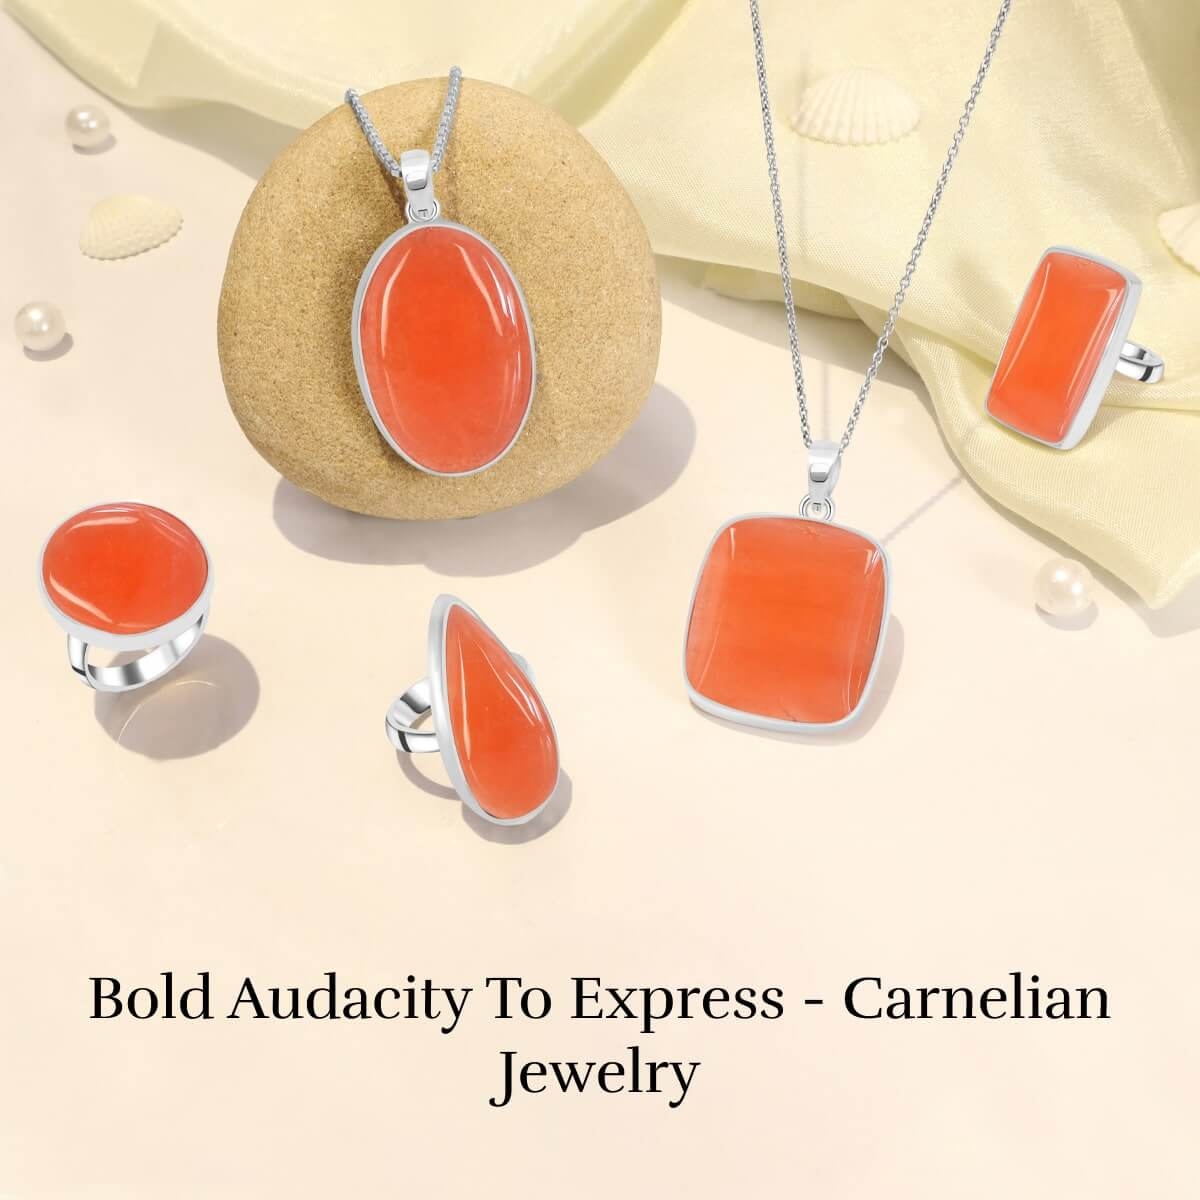 Carnelian Jewelry